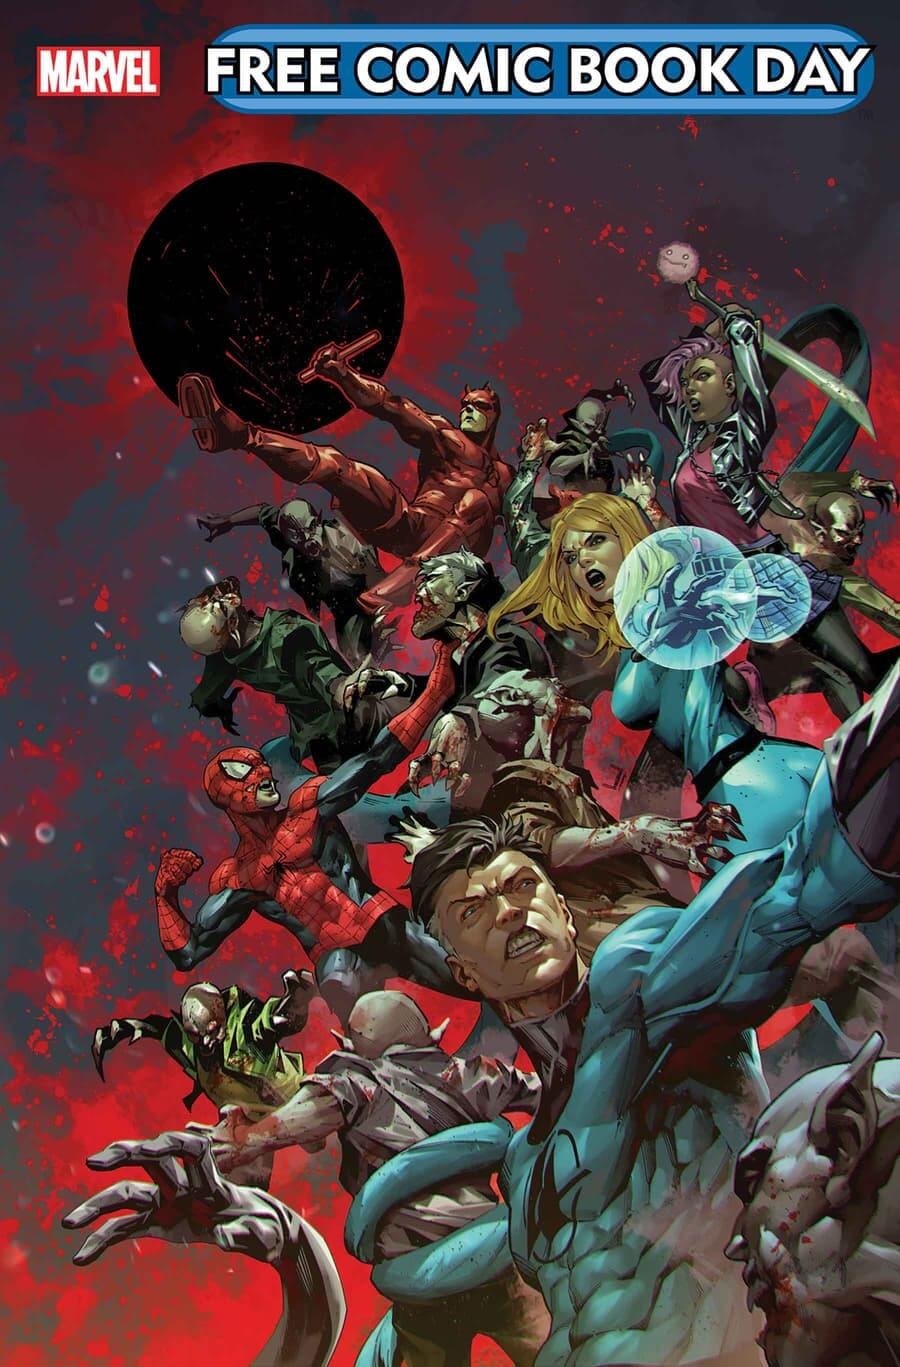 Couverture du Free Comic Book Day 2024 : Blood Hunt/X-Men, présentant deux des événements les plus attendus de Marvel.